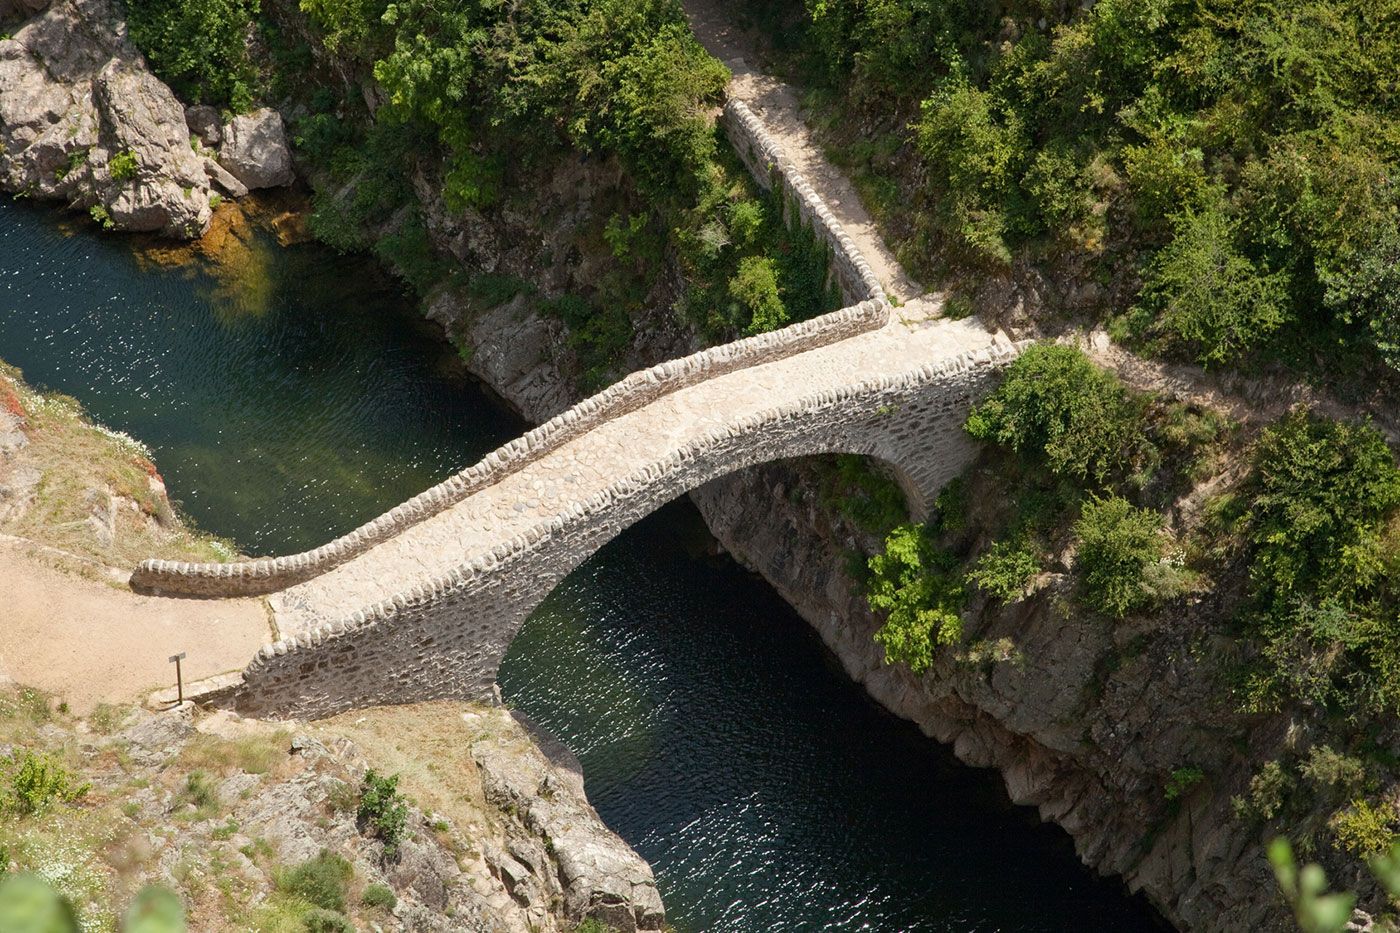 The Pont du Diable